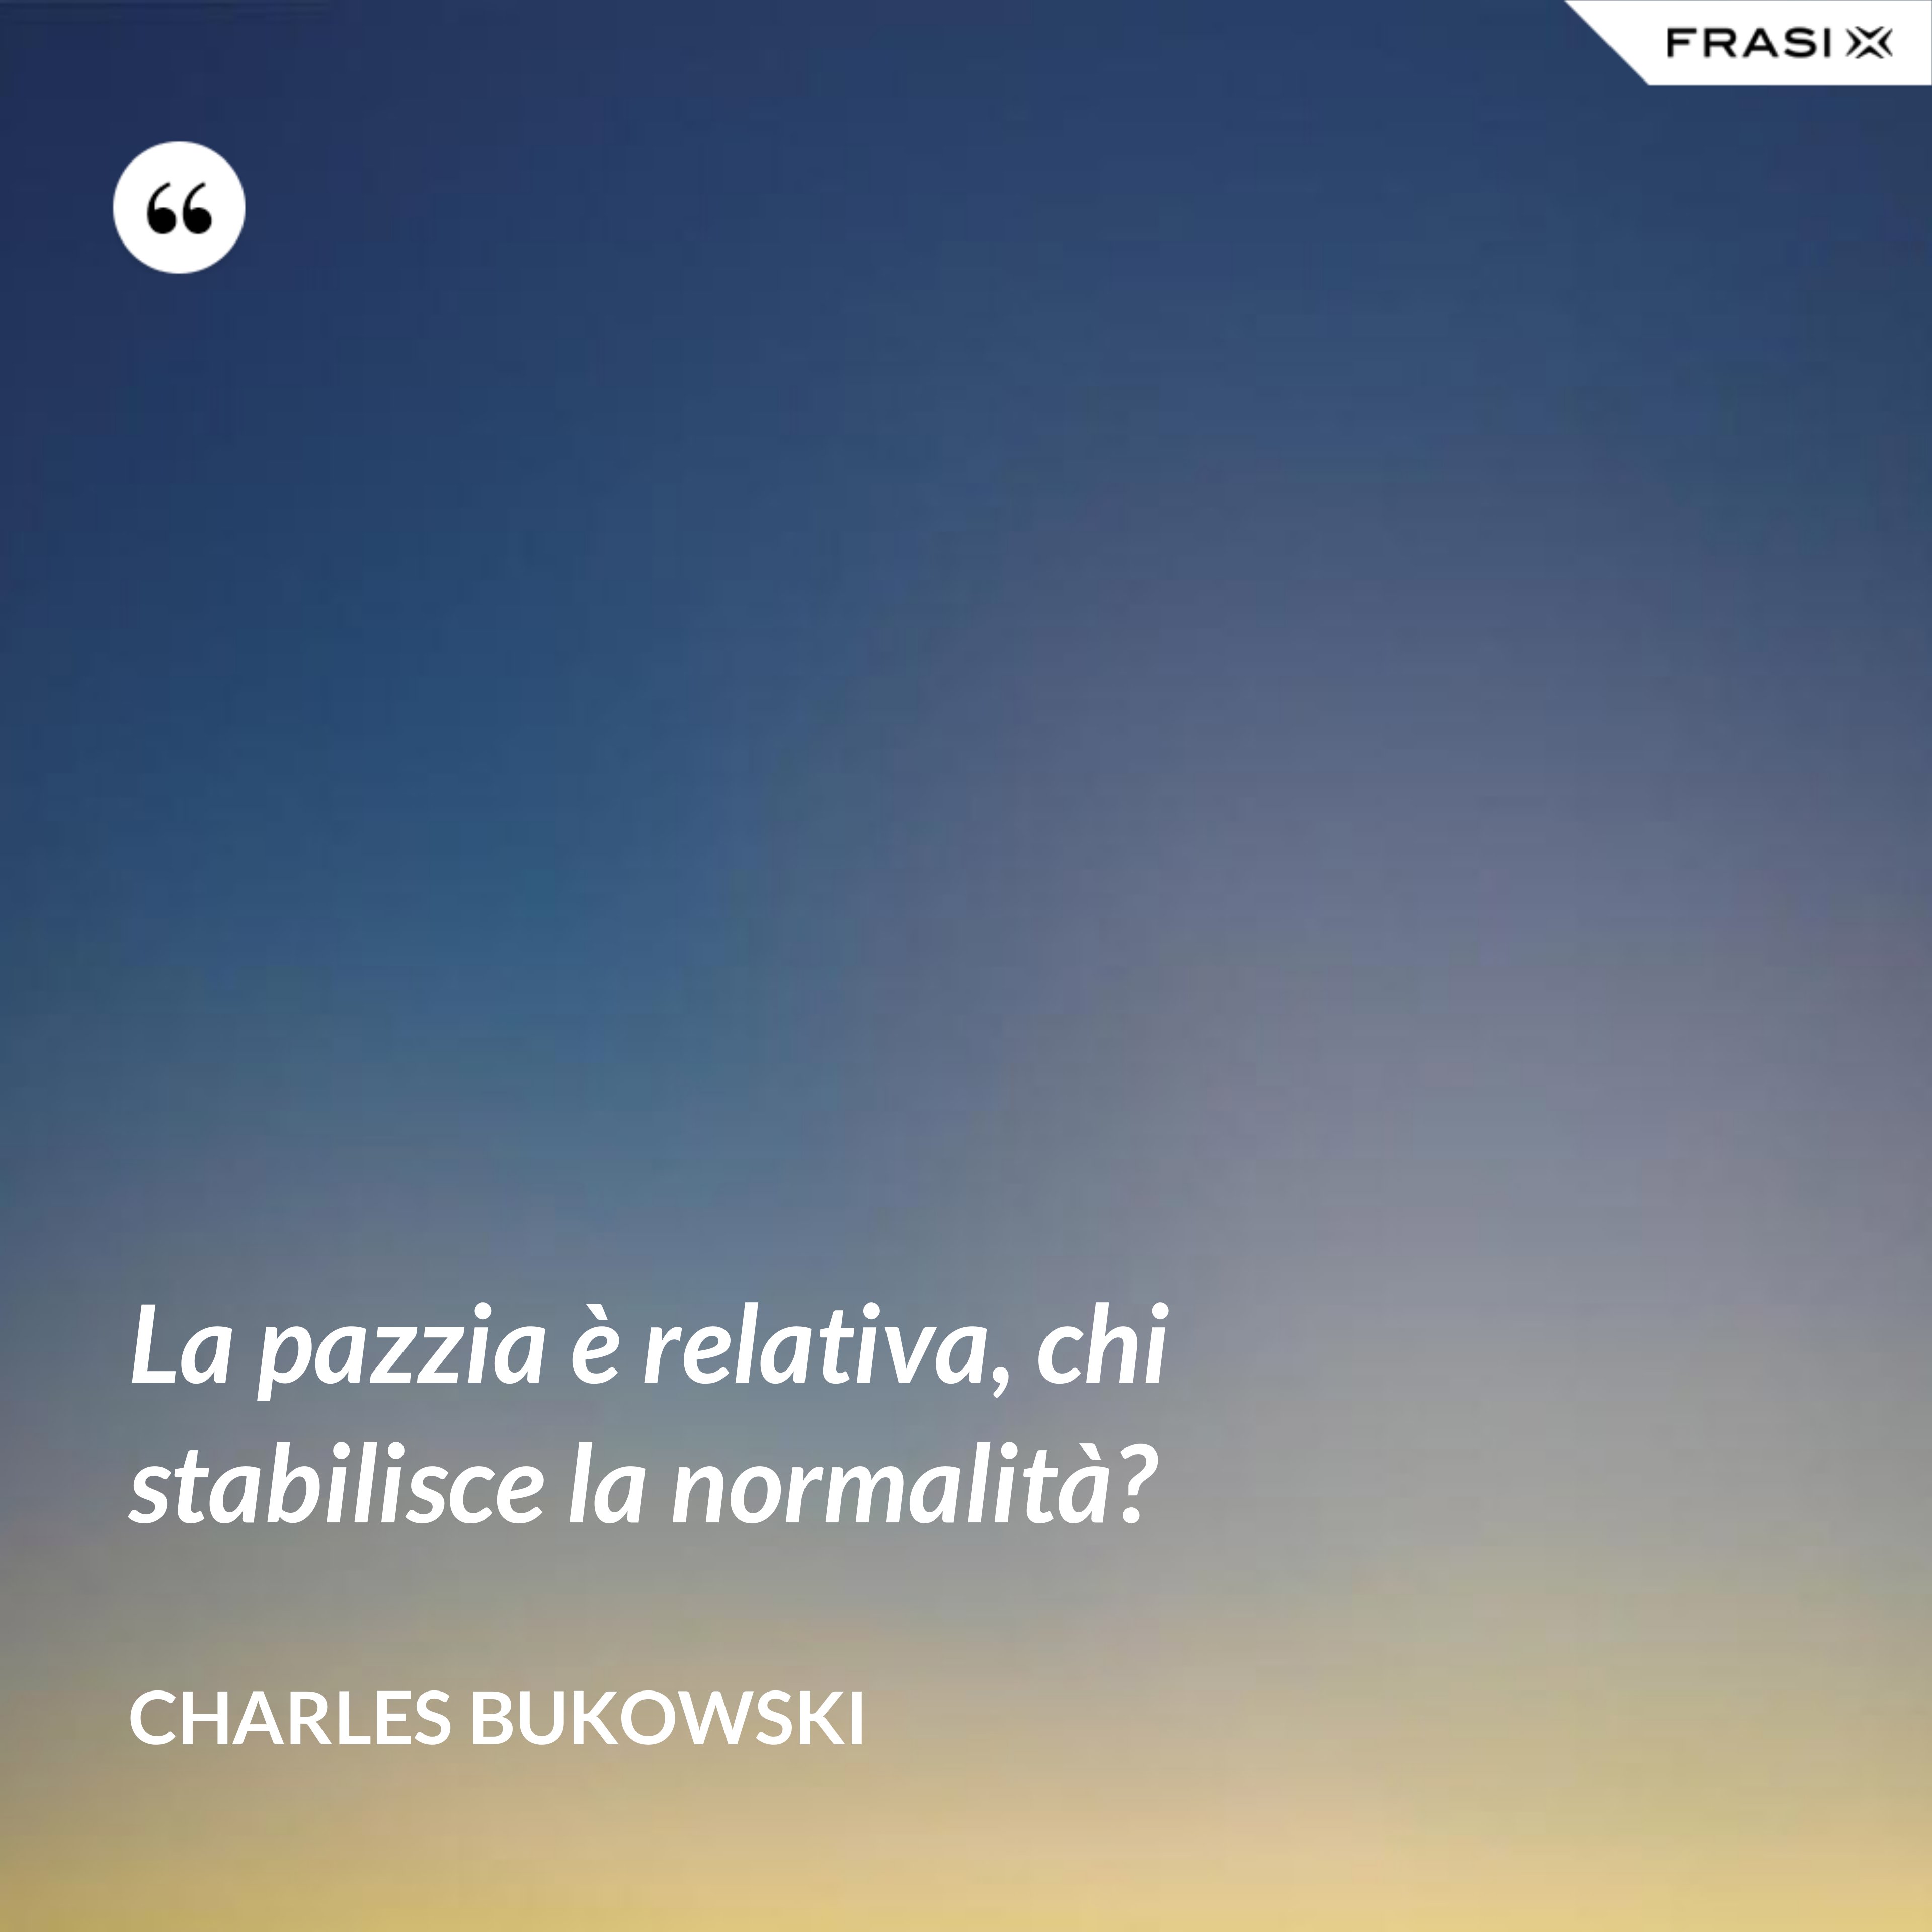 La pazzia è relativa, chi stabilisce la normalità? - Charles Bukowski